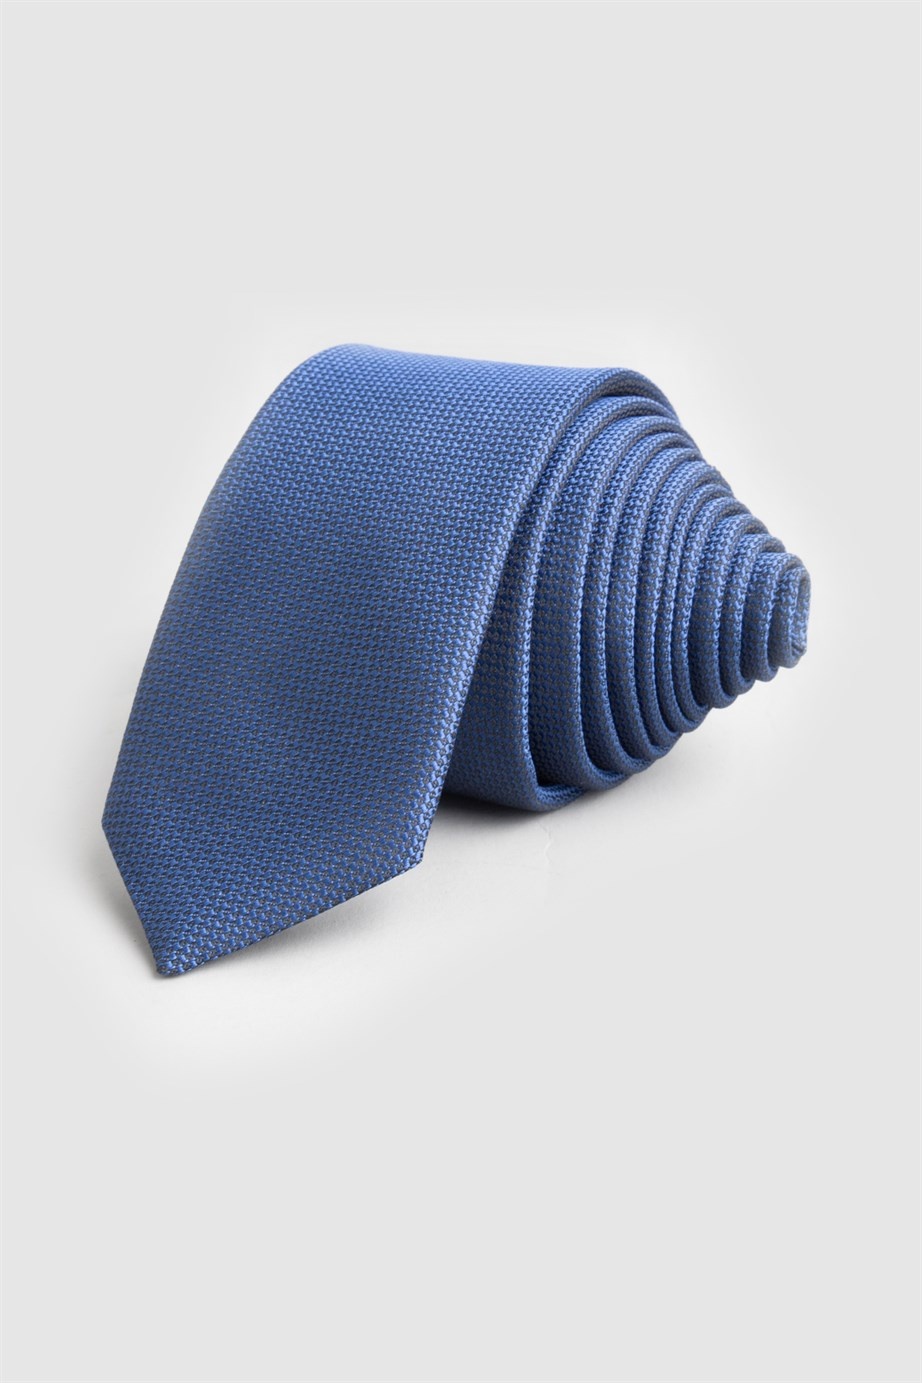 Indigókék színű vékony nyakkendő